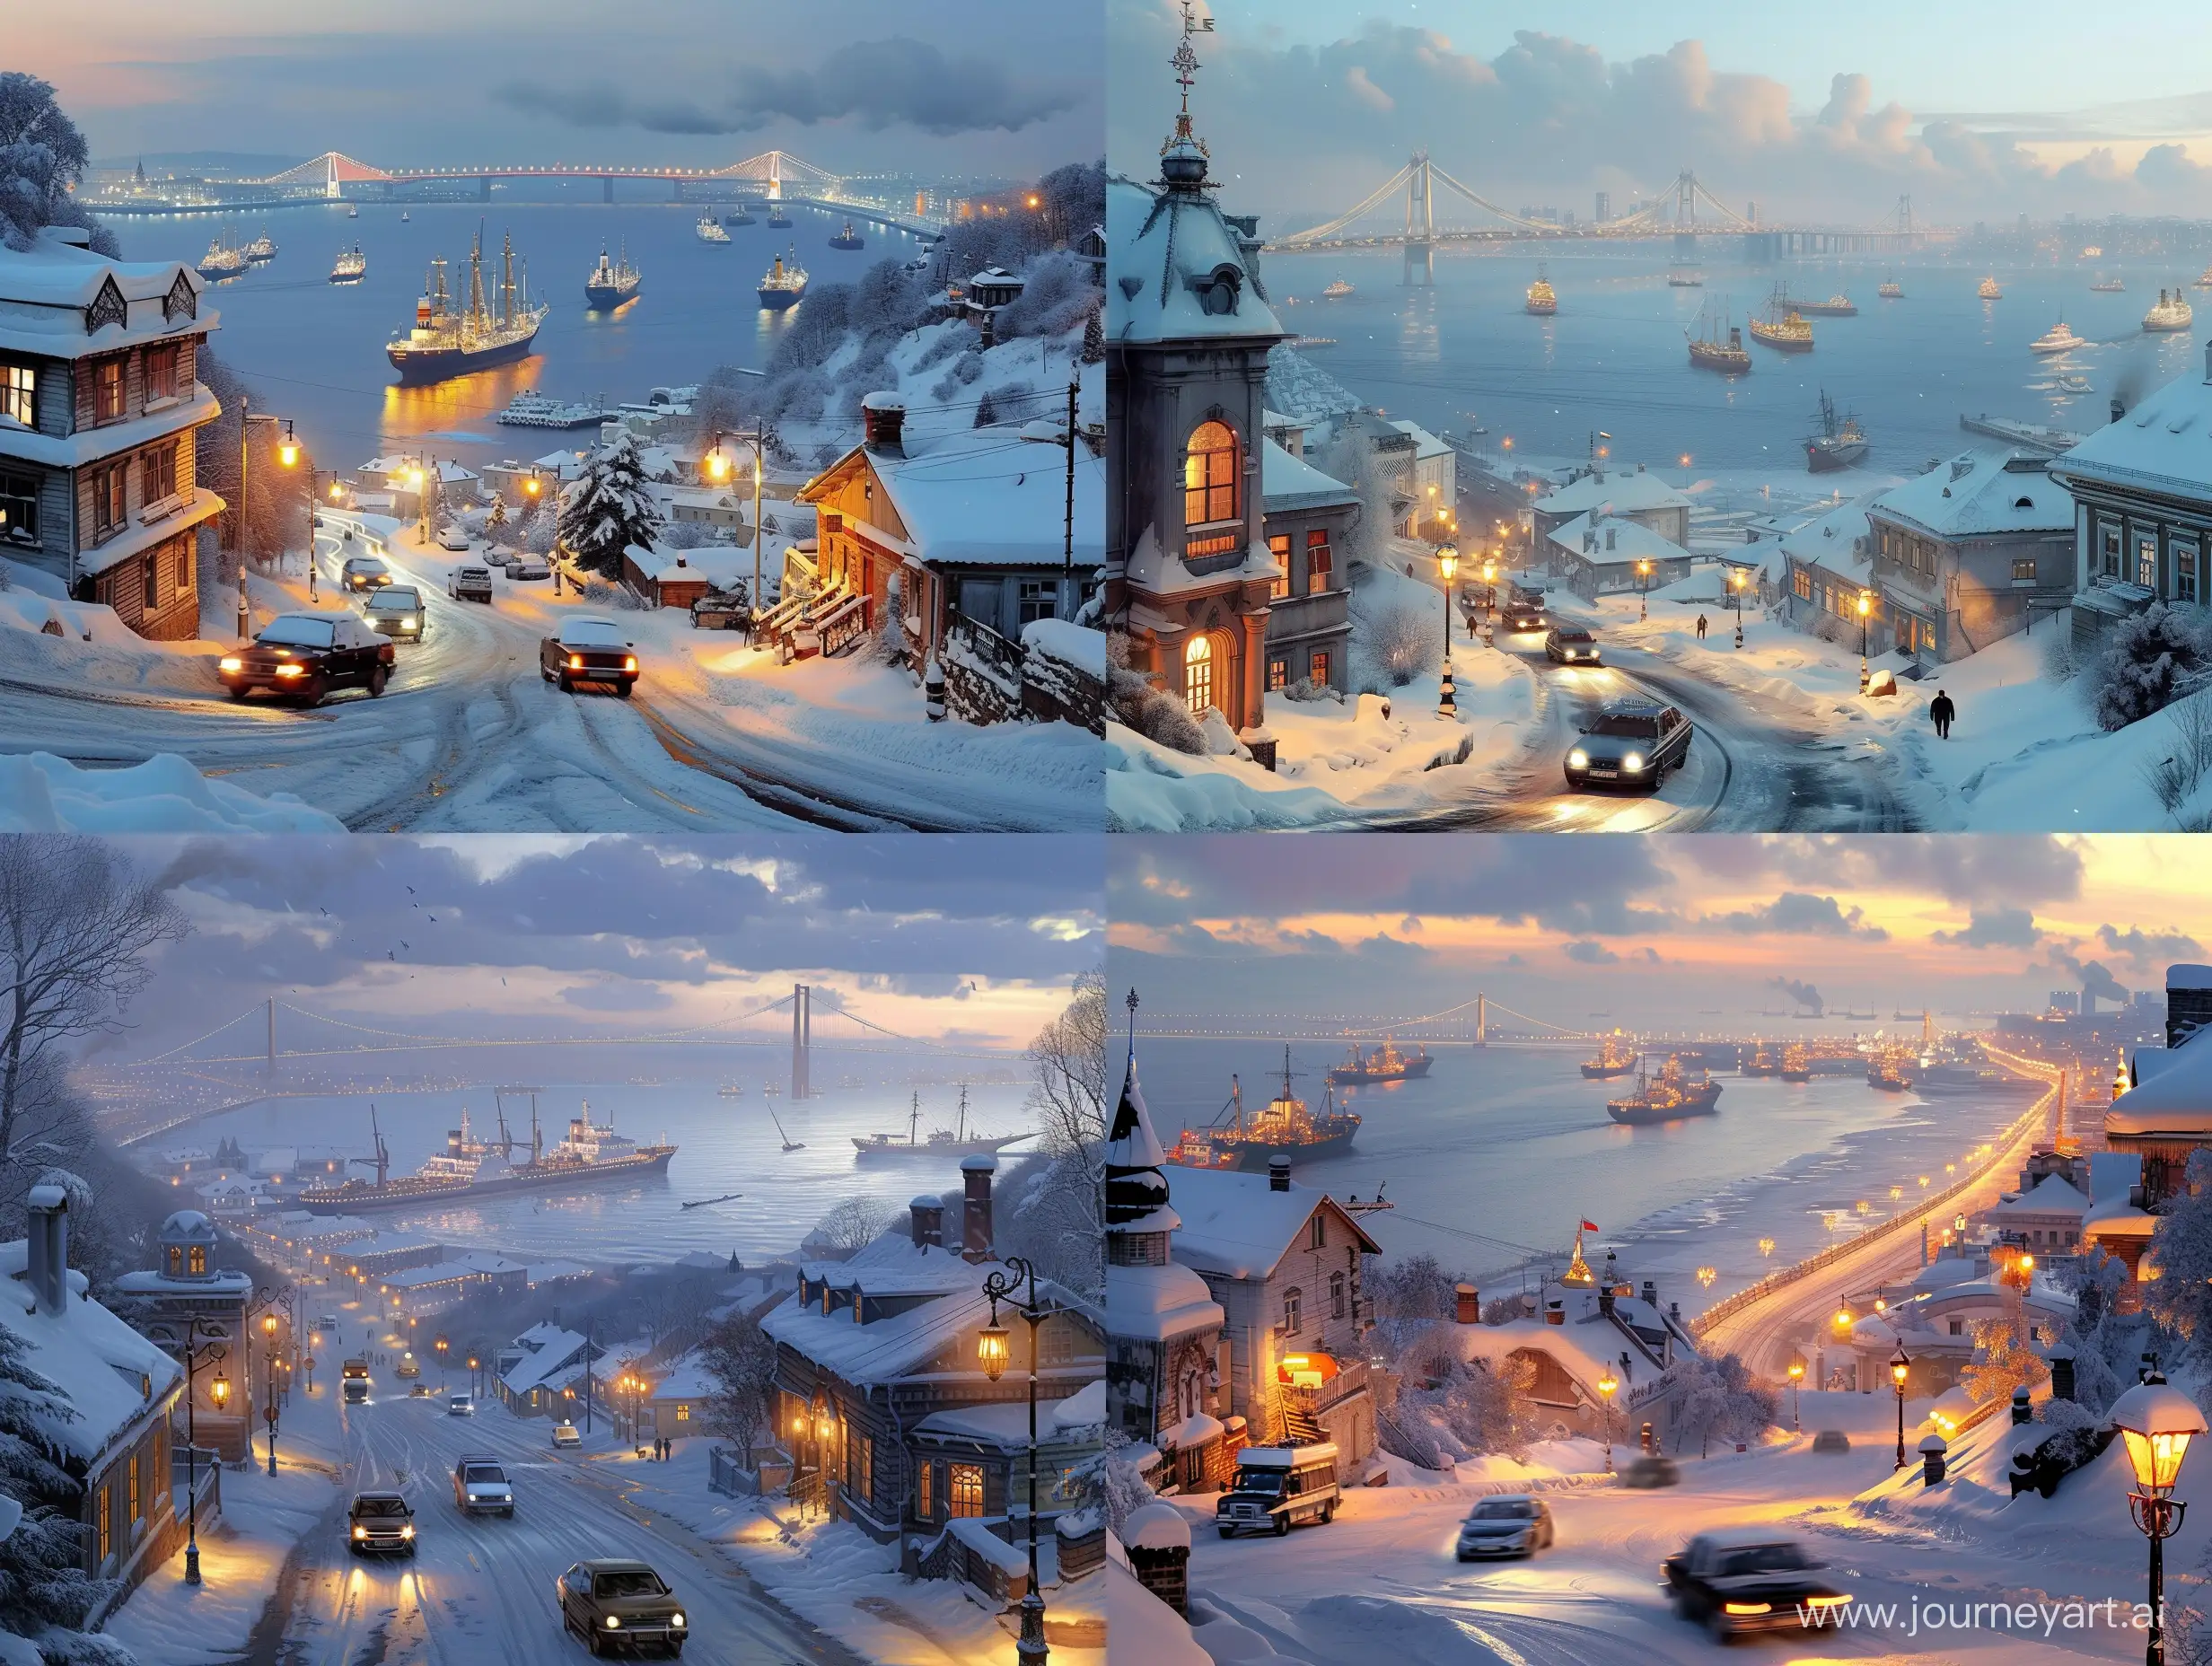  заснеженный город Владивосток с видом на моря и мост золотой рог, ездят машины, по морю плывут корабли торговые, время пред вечернее и горит свет в домах и включены фонари